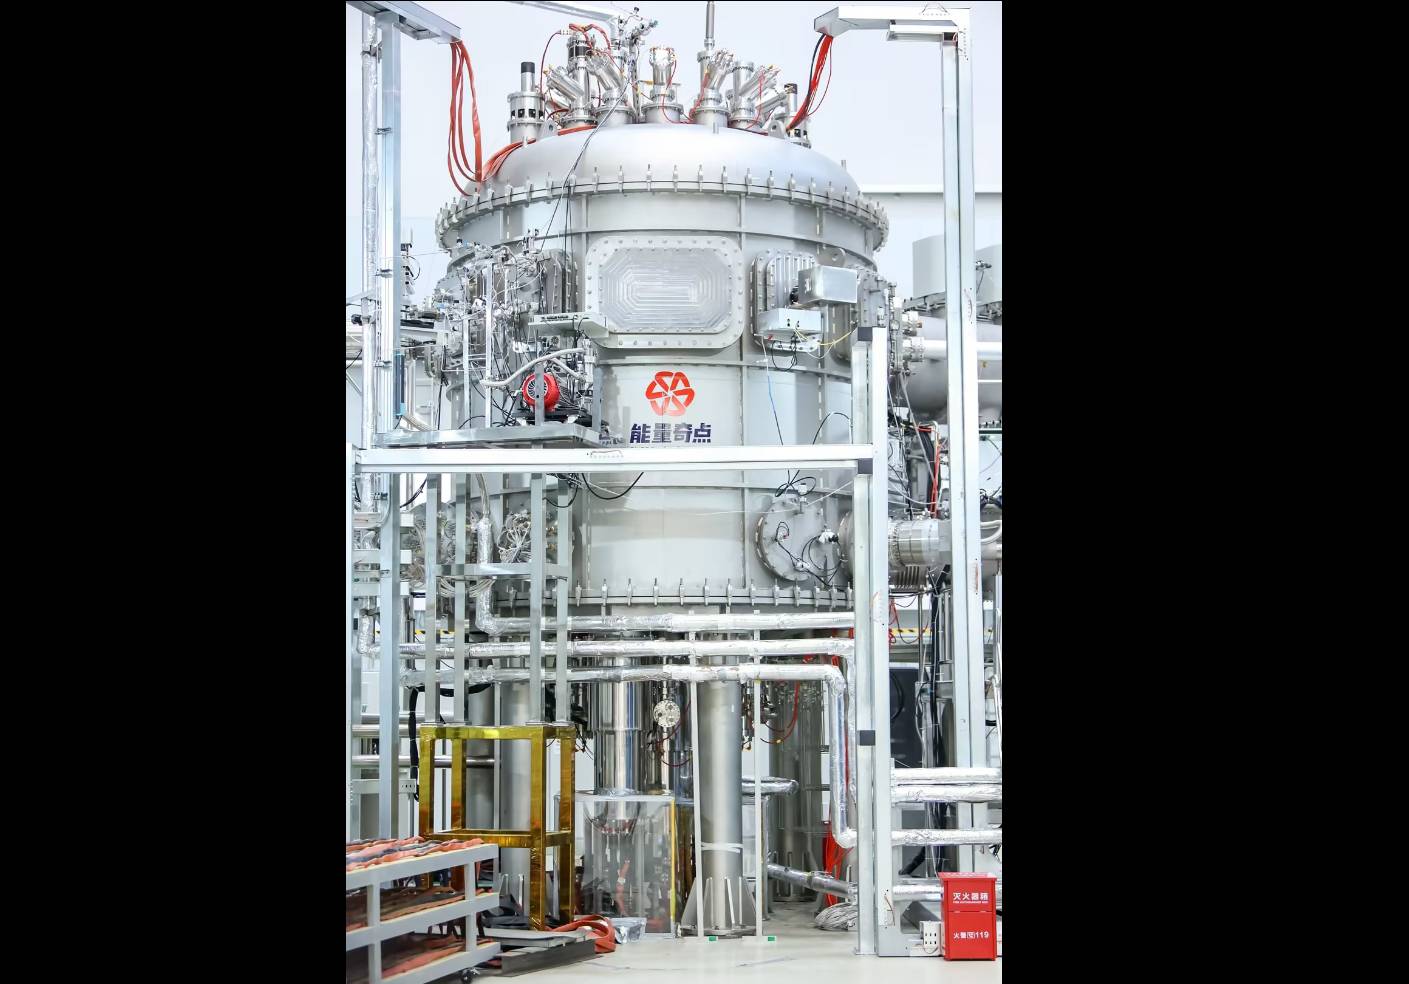 位於上海的能量奇點能源科技公司近日宣布，由該公司設計、研發和建造的全高溫超導核聚變裝置「洪荒70」成功實現等離子體放電。圖取自能量奇點